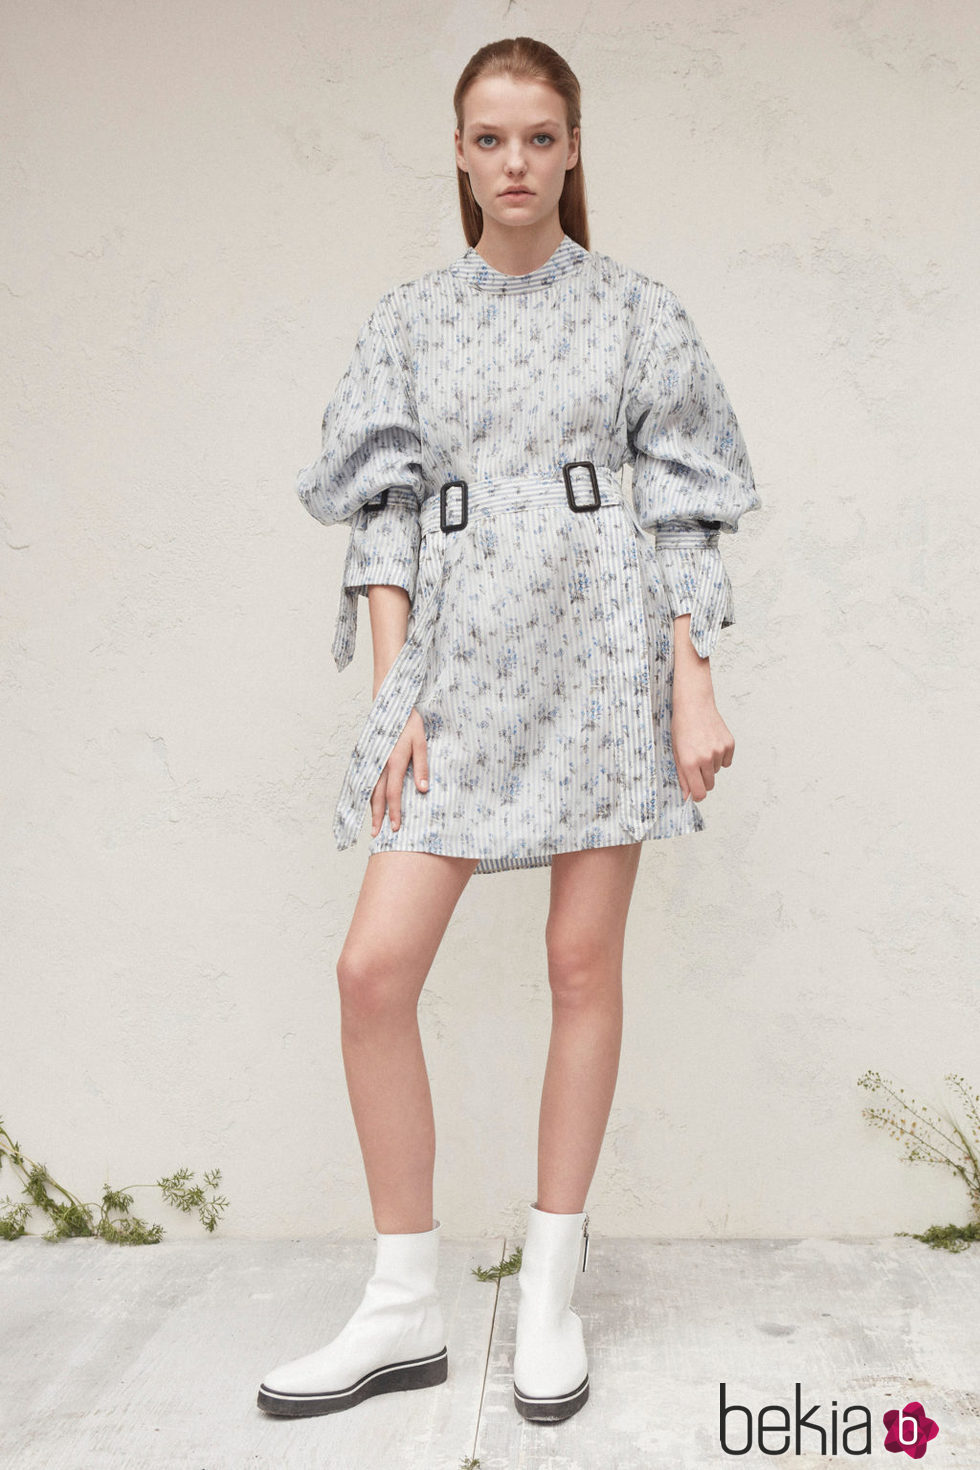 Diseño vestido bombacho para la nueva colección femenina Pre-Spring 2017 de Calvin Klein